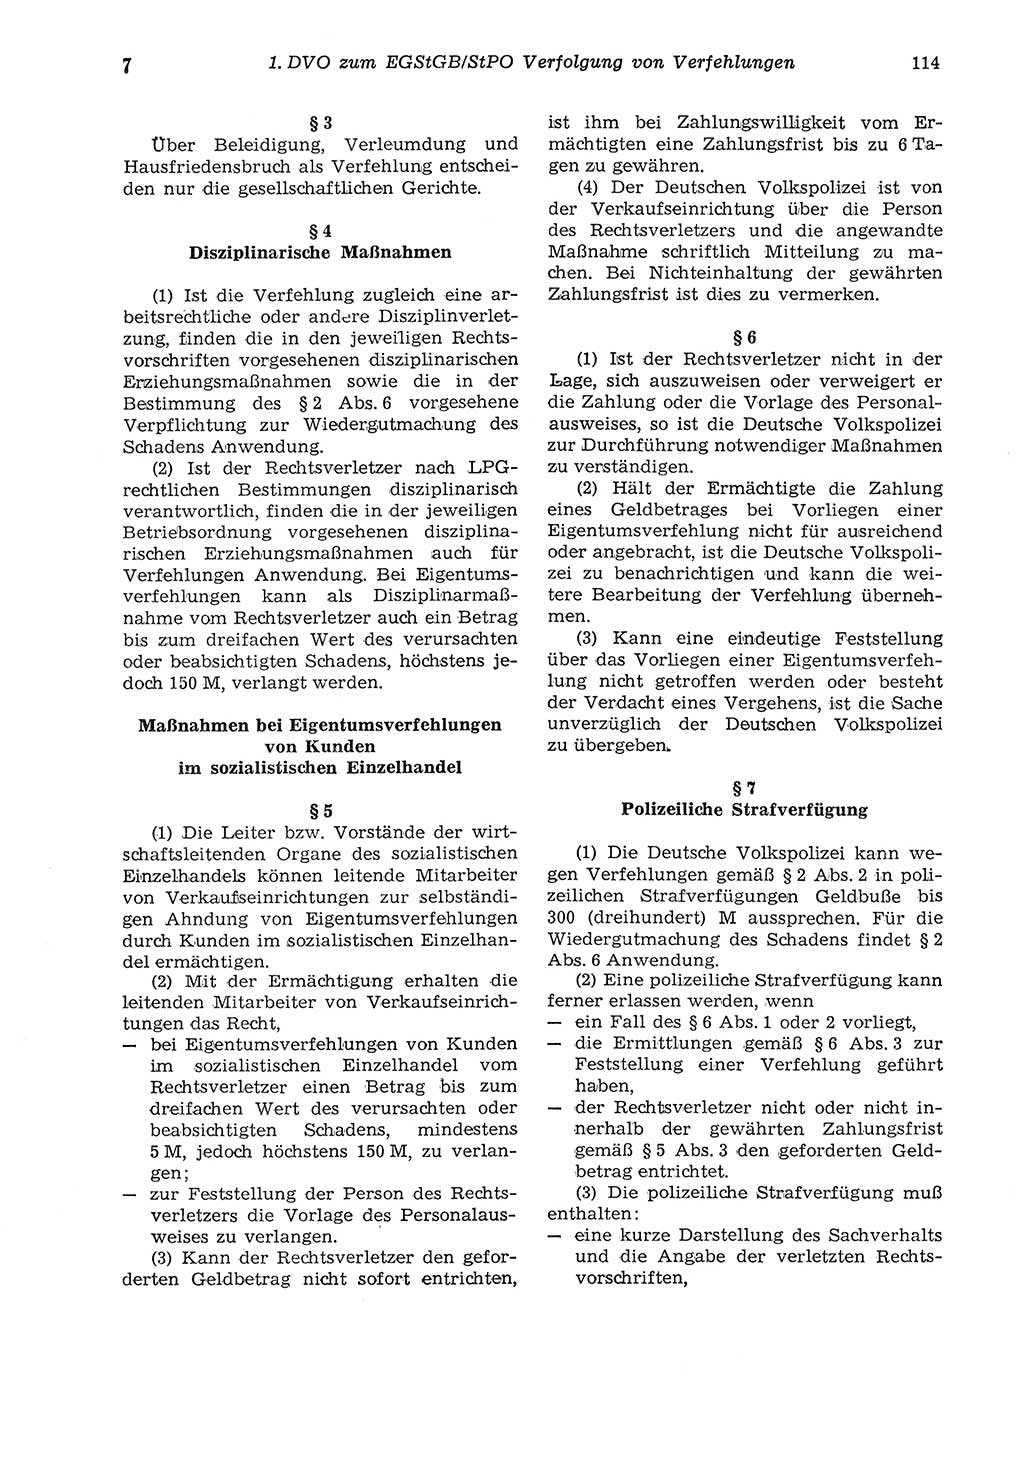 Strafgesetzbuch (StGB) der Deutschen Demokratischen Republik (DDR) und angrenzende Gesetze und Bestimmungen 1975, Seite 114 (StGB DDR Ges. Best. 1975, S. 114)